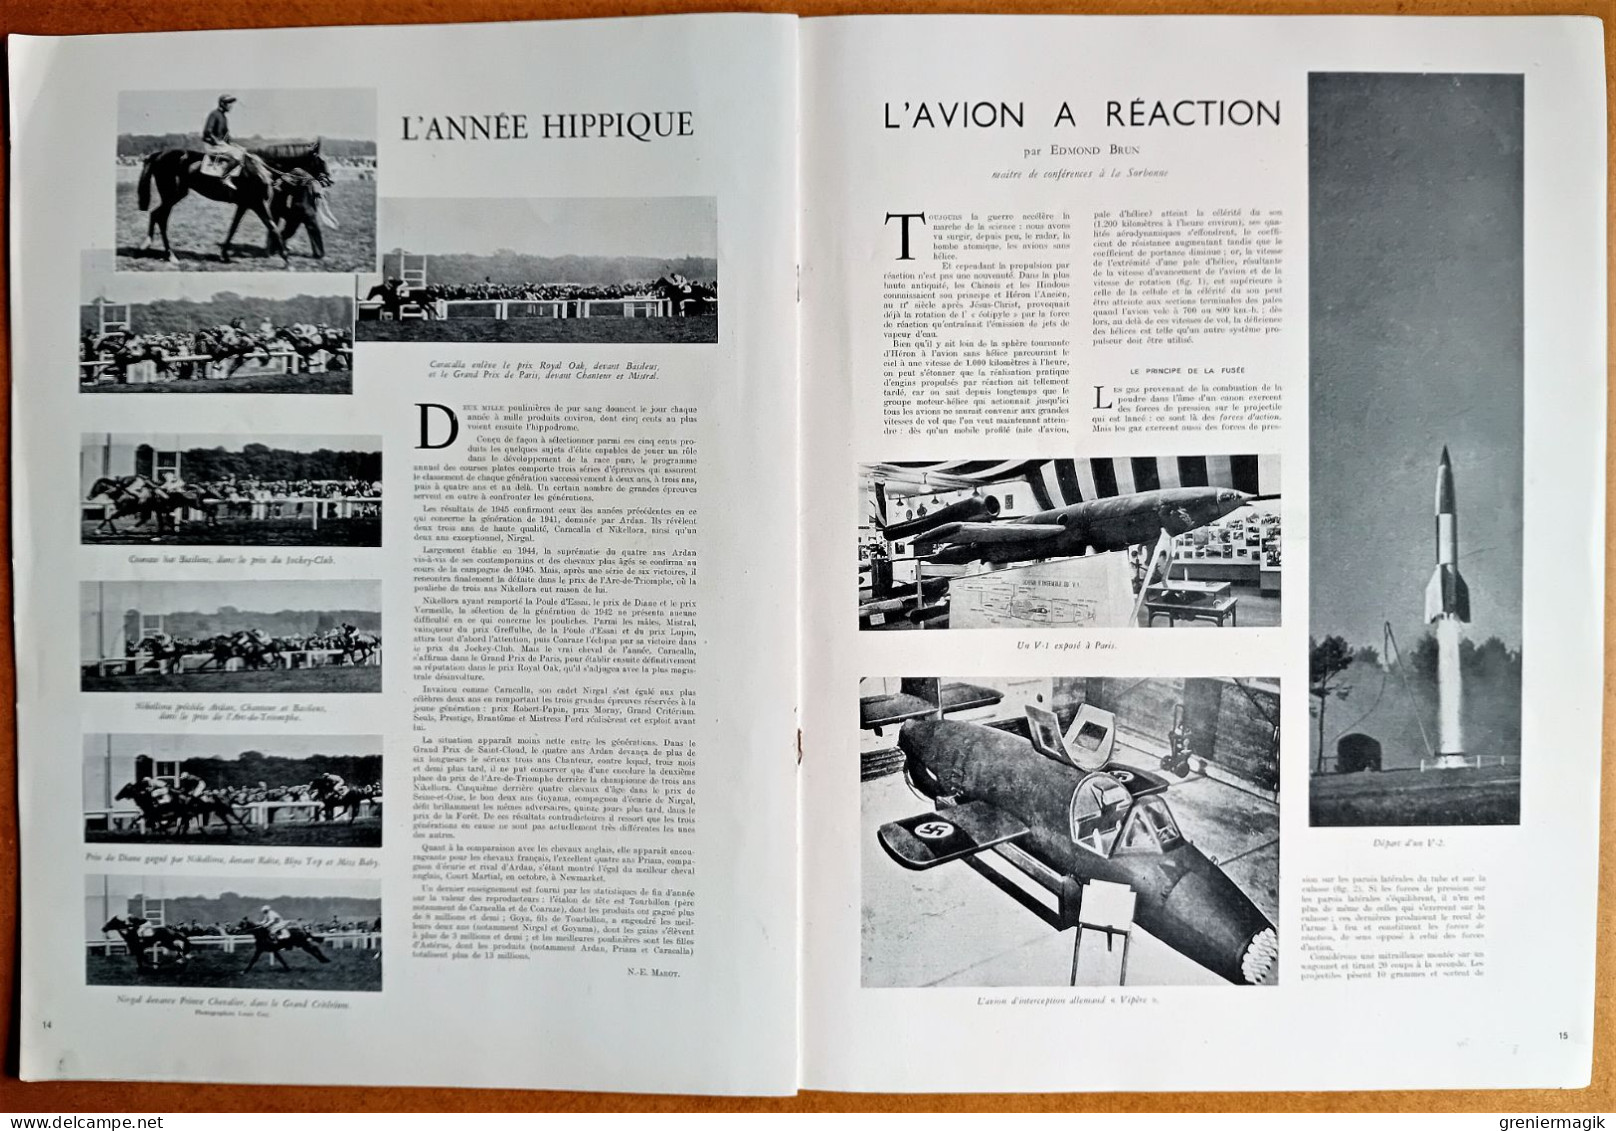 France Illustration N°14 05/01/1946 Mort du Général Patton/Conférence Moscou/Suède/Jean Crotti/Avion à réaction/Autriche